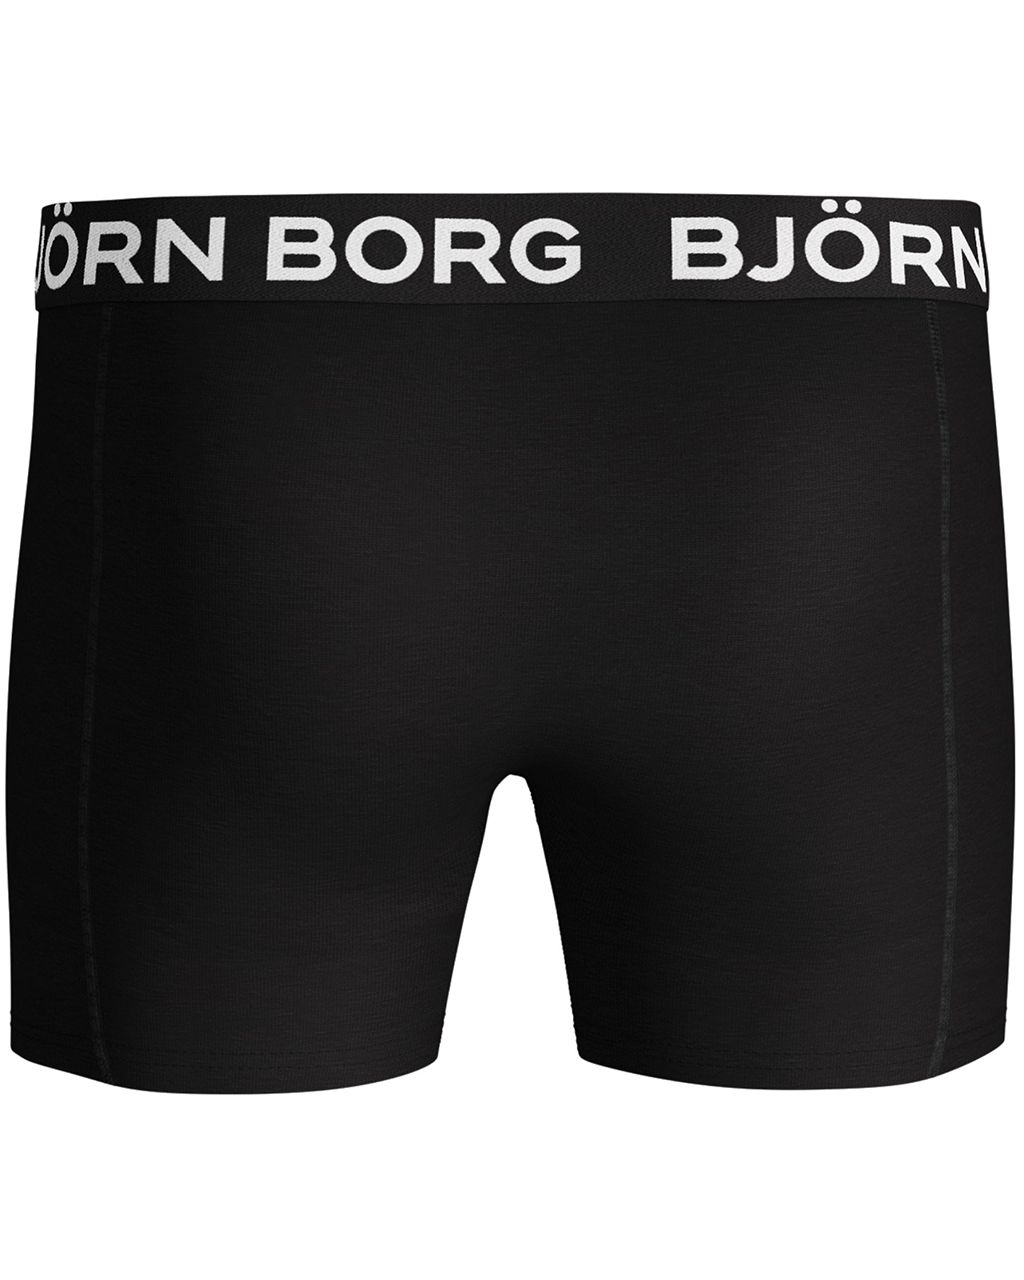 Björn Borg Boxershort 2-pack Zwart 051820-001-L